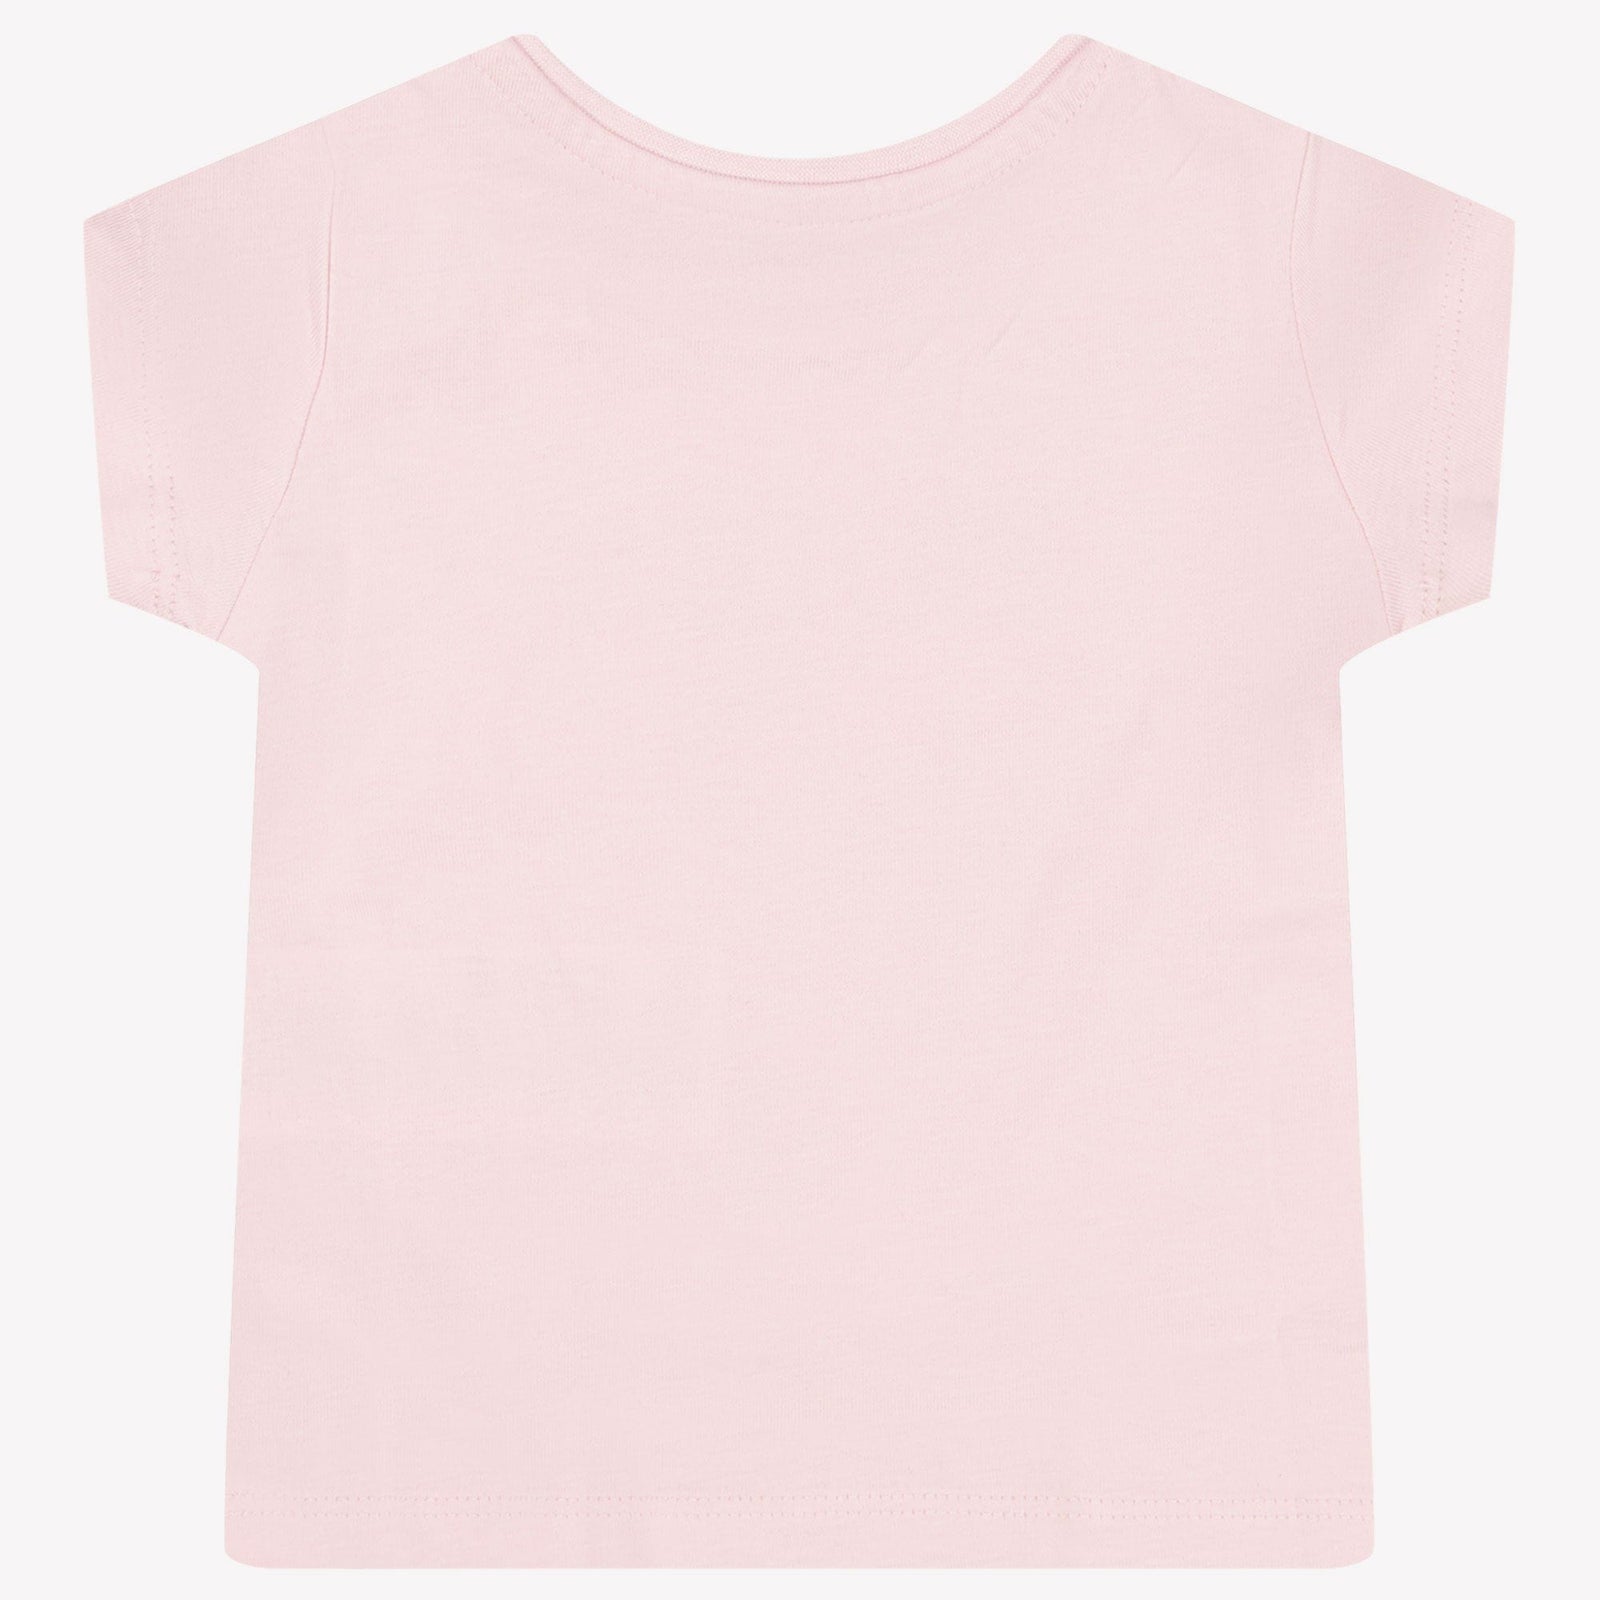 Guess Baby Meisjes T-Shirt Roze 12 mnd